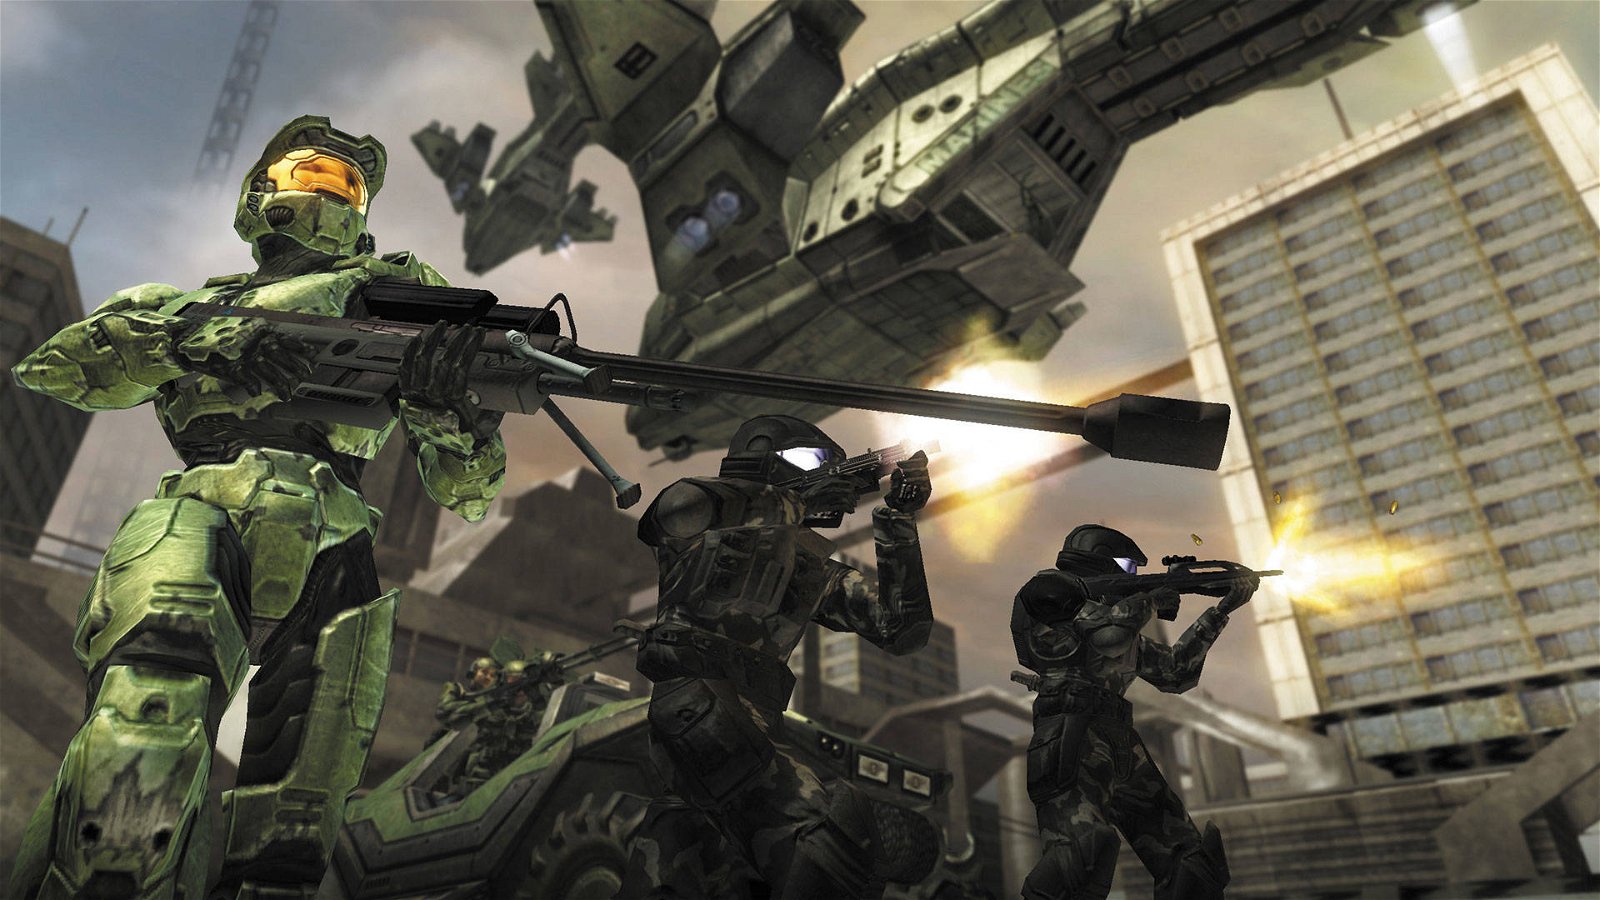 Immagine di Halo 2: Jervalin completa il gioco a leggendario senza sparare, un vero e proprio folle